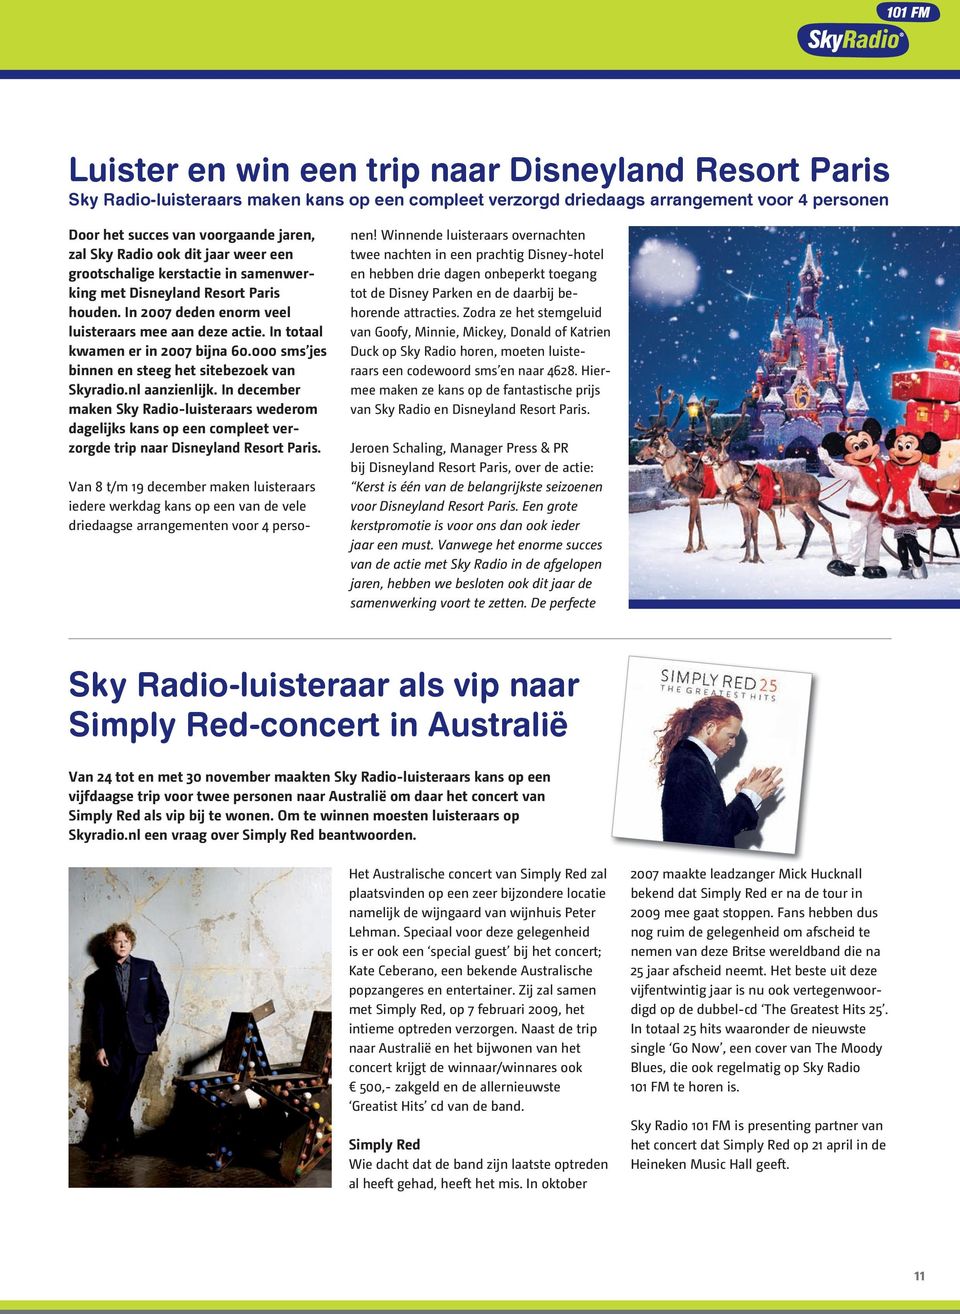 000 sms jes binnen en steeg het sitebezoek van Skyradio.nl aanzienlijk. In december maken Sky Radioluisteraars wederom dagelijks kans op een compleet verzorgde trip naar Disneyland Resort Paris.